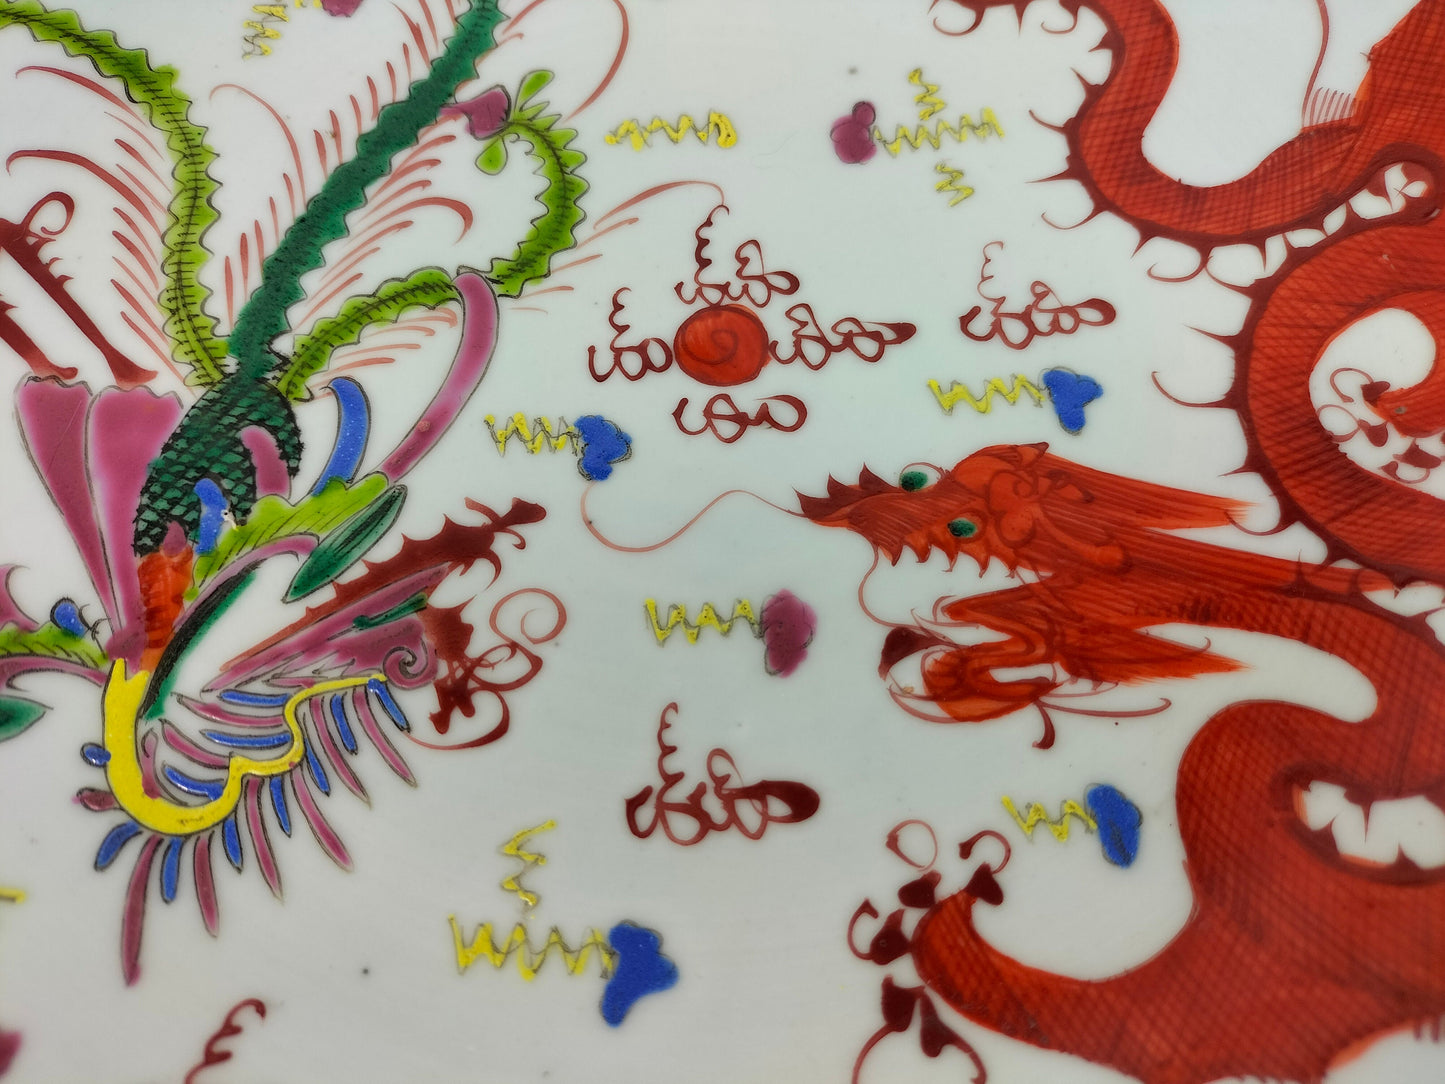 Pinggan Cina antik besar dihiasi dengan naga dan burung phoenix // Tempoh Republik (1912-1949)